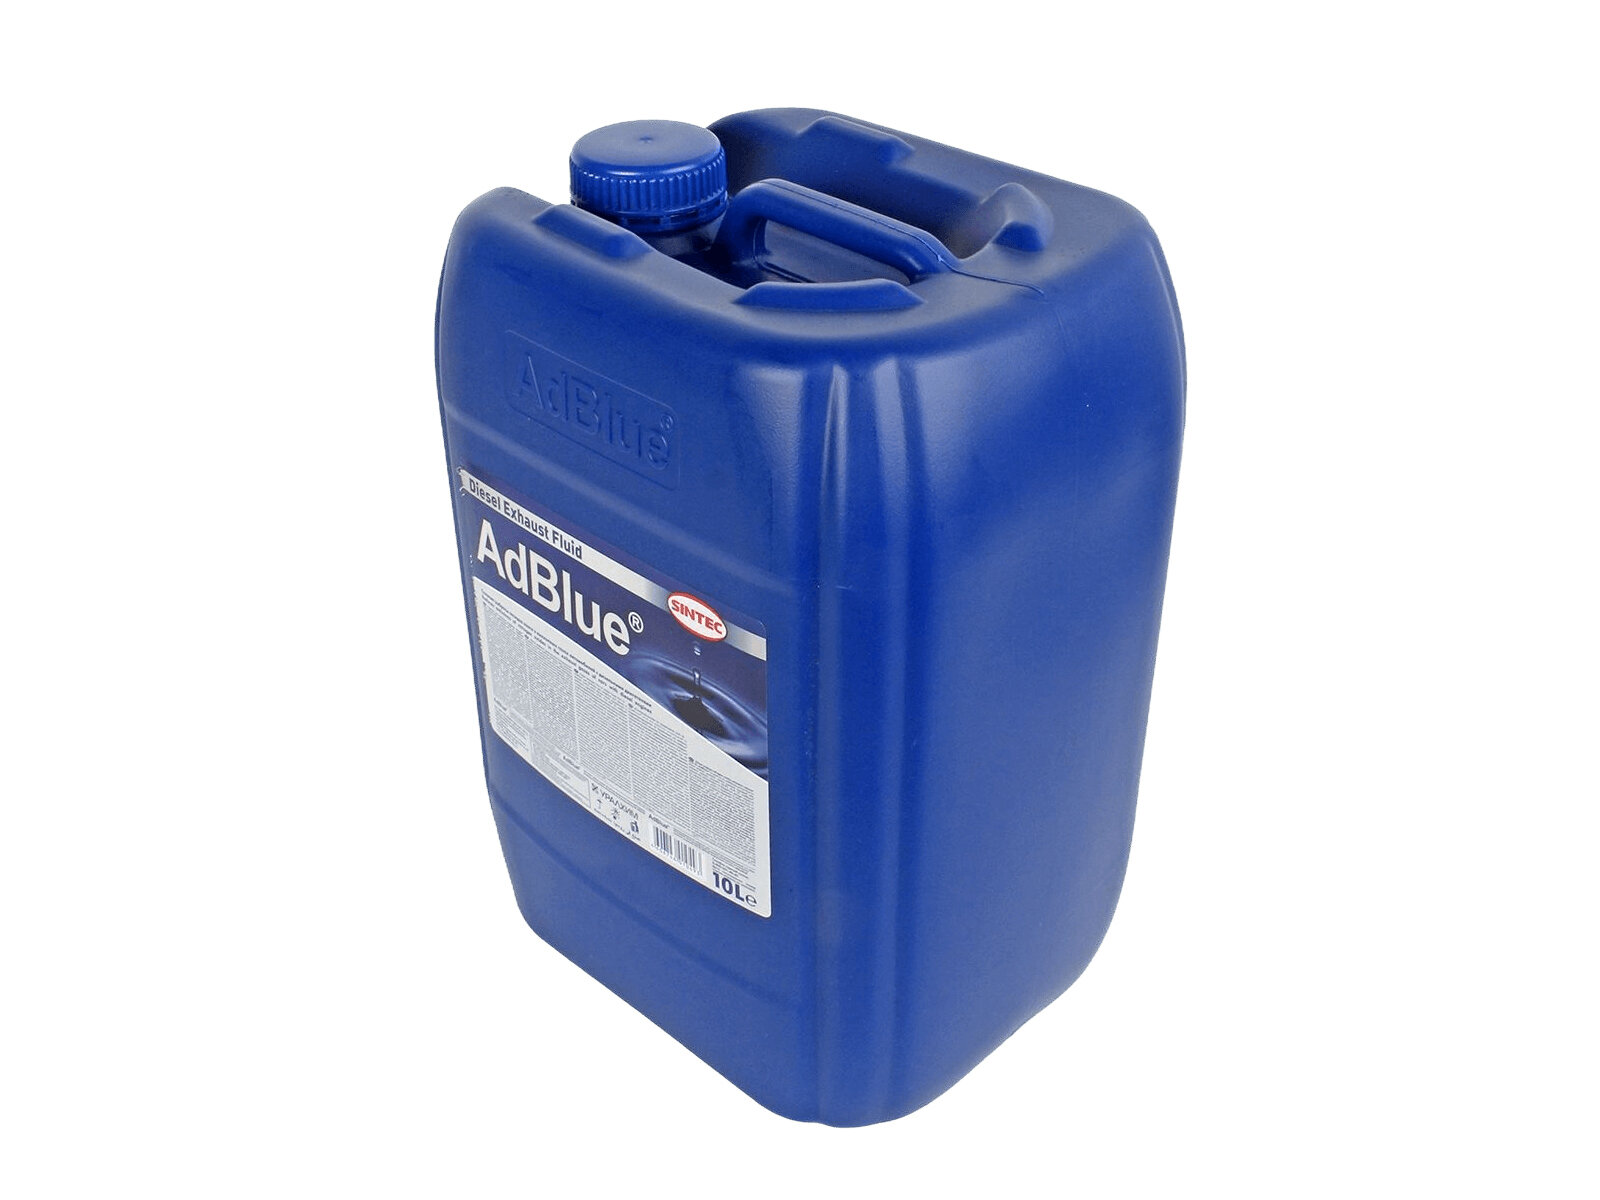 Жидкость SINTEC AdBlue для системы SCR дизельных двигателей 10 л